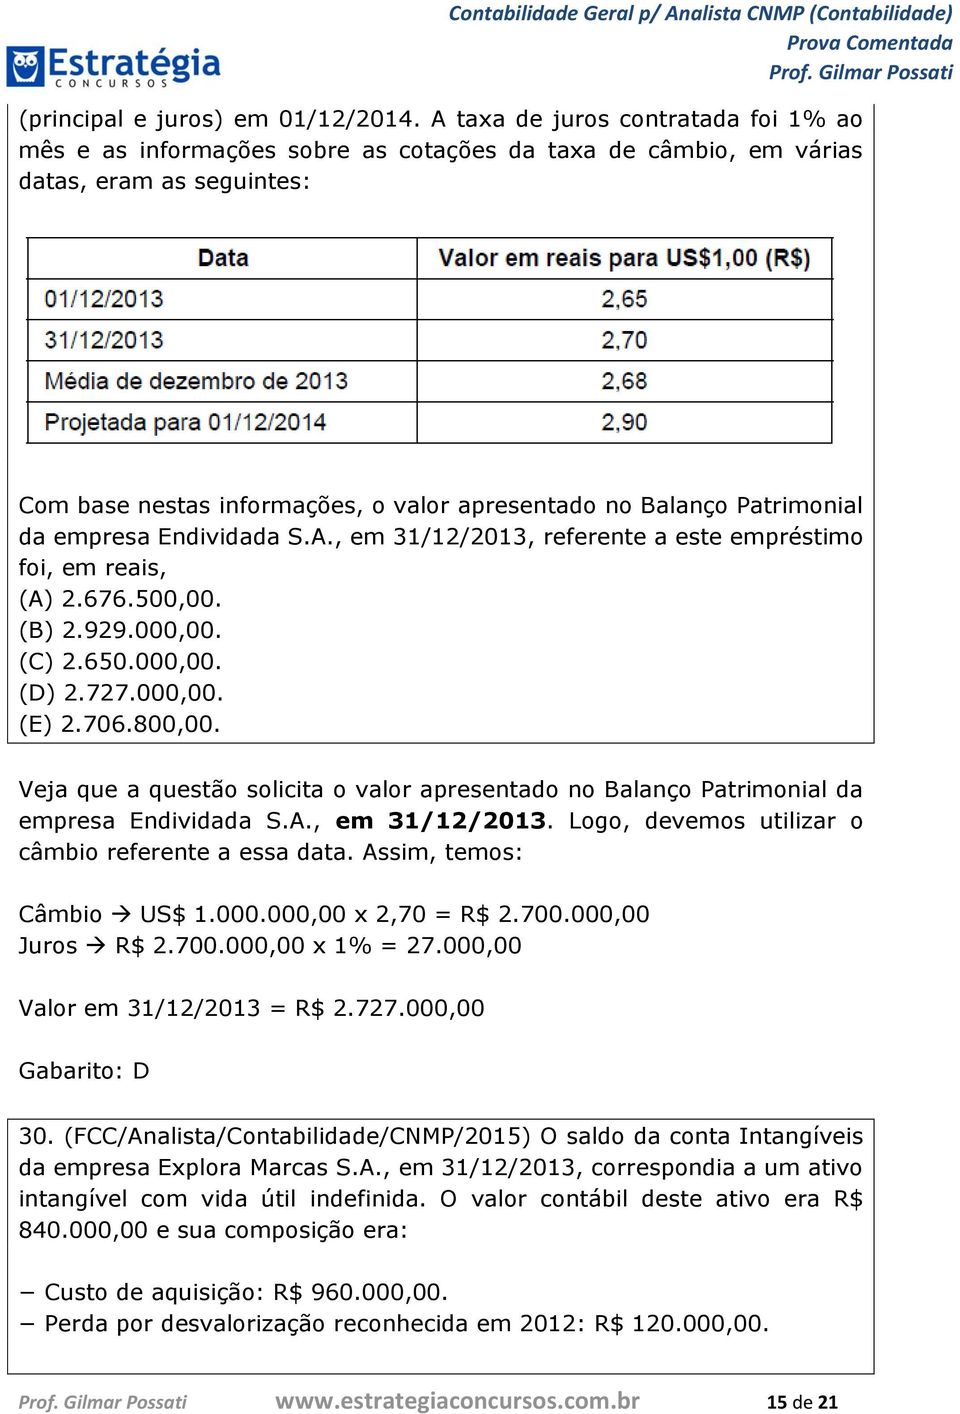 Patrimonial da empresa Endividada S.A., em 31/12/2013, referente a este empréstimo foi, em reais, (A) 2.676.500,00. (B) 2.929.000,00. (C) 2.650.000,00. (D) 2.727.000,00. (E) 2.706.800,00.